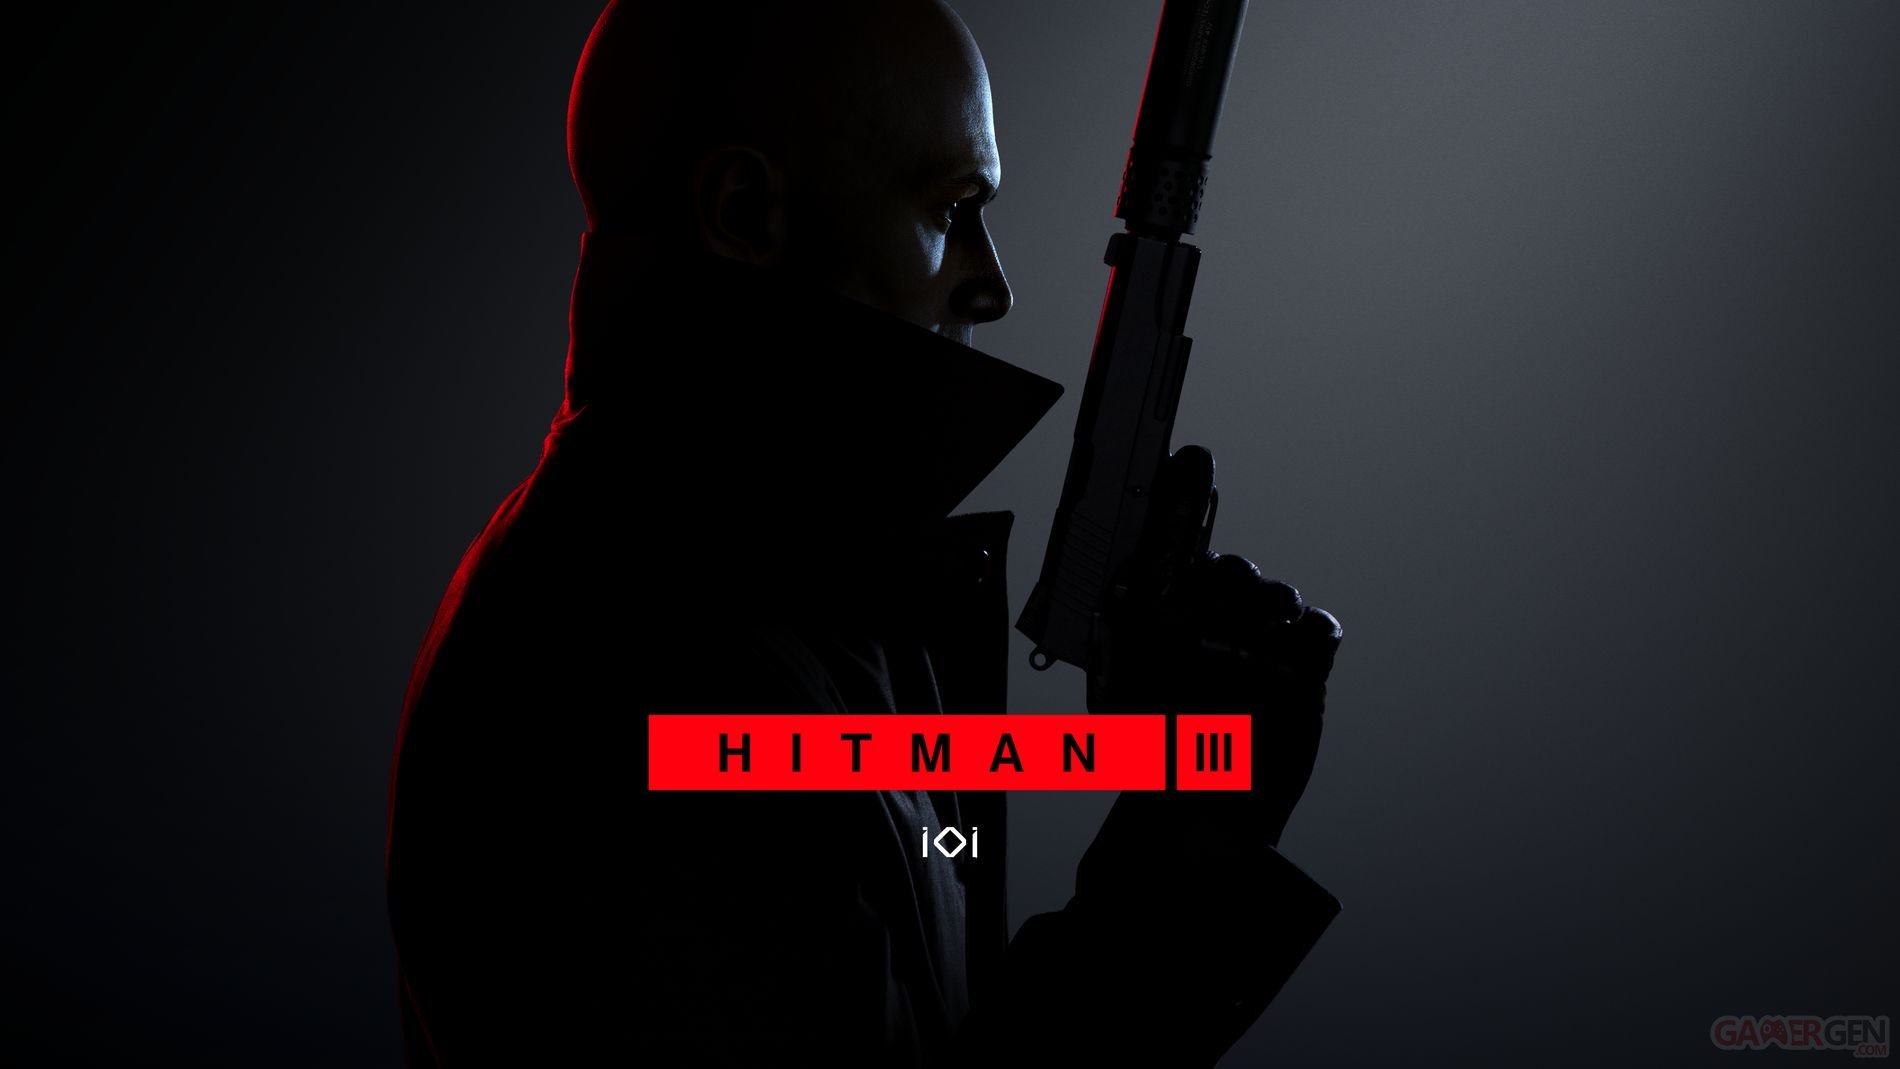 Hitman 3 : un trailer de gameplay, de nouvelles fonctionnalités sur PS5 et un support PS VR